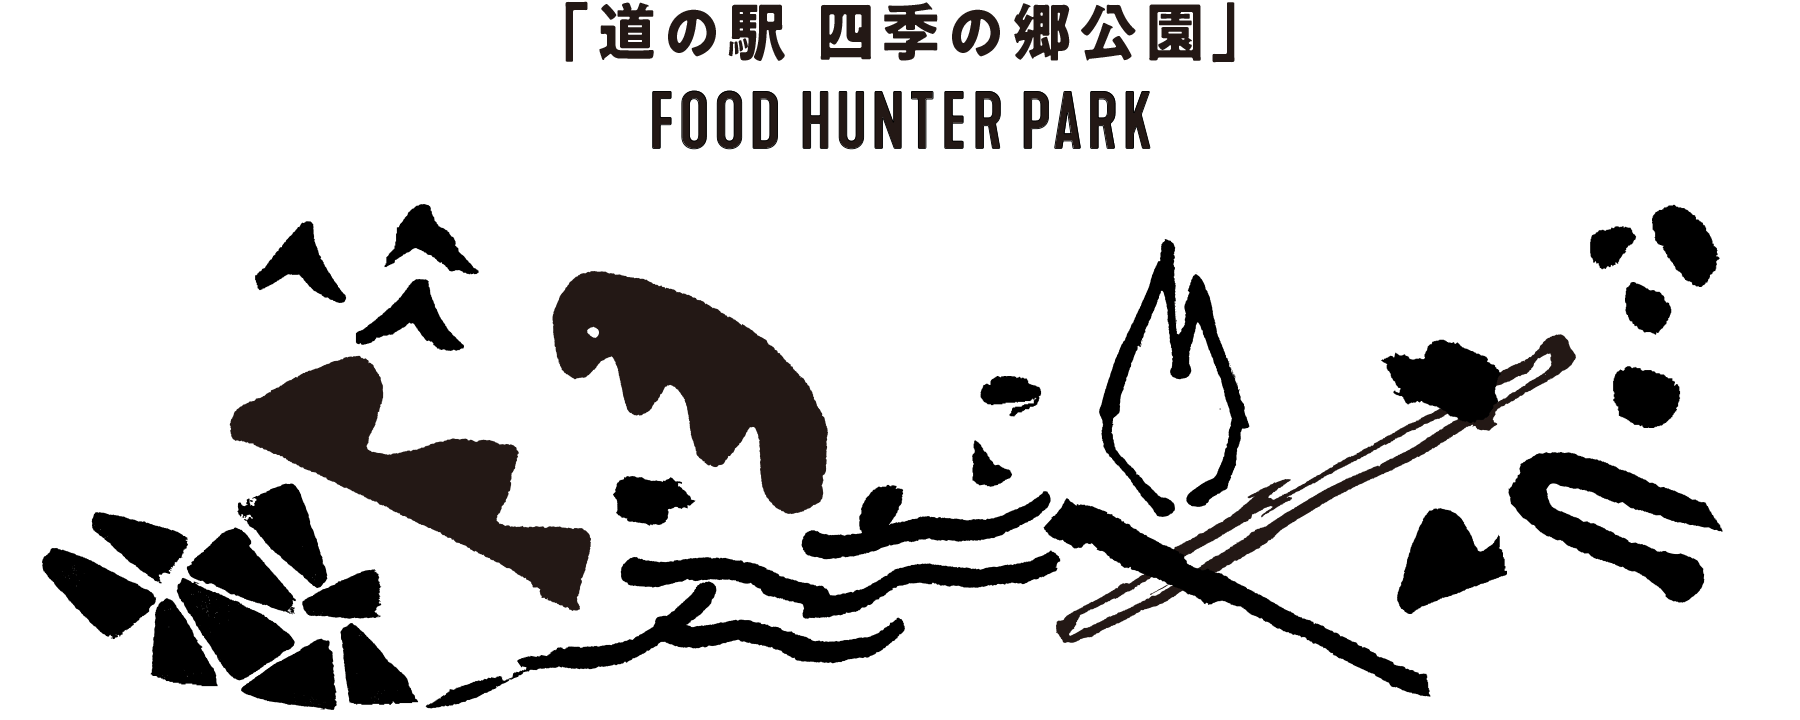 道の駅 四季の郷公園 FOOD HUNTER PARK フードハンターパーク